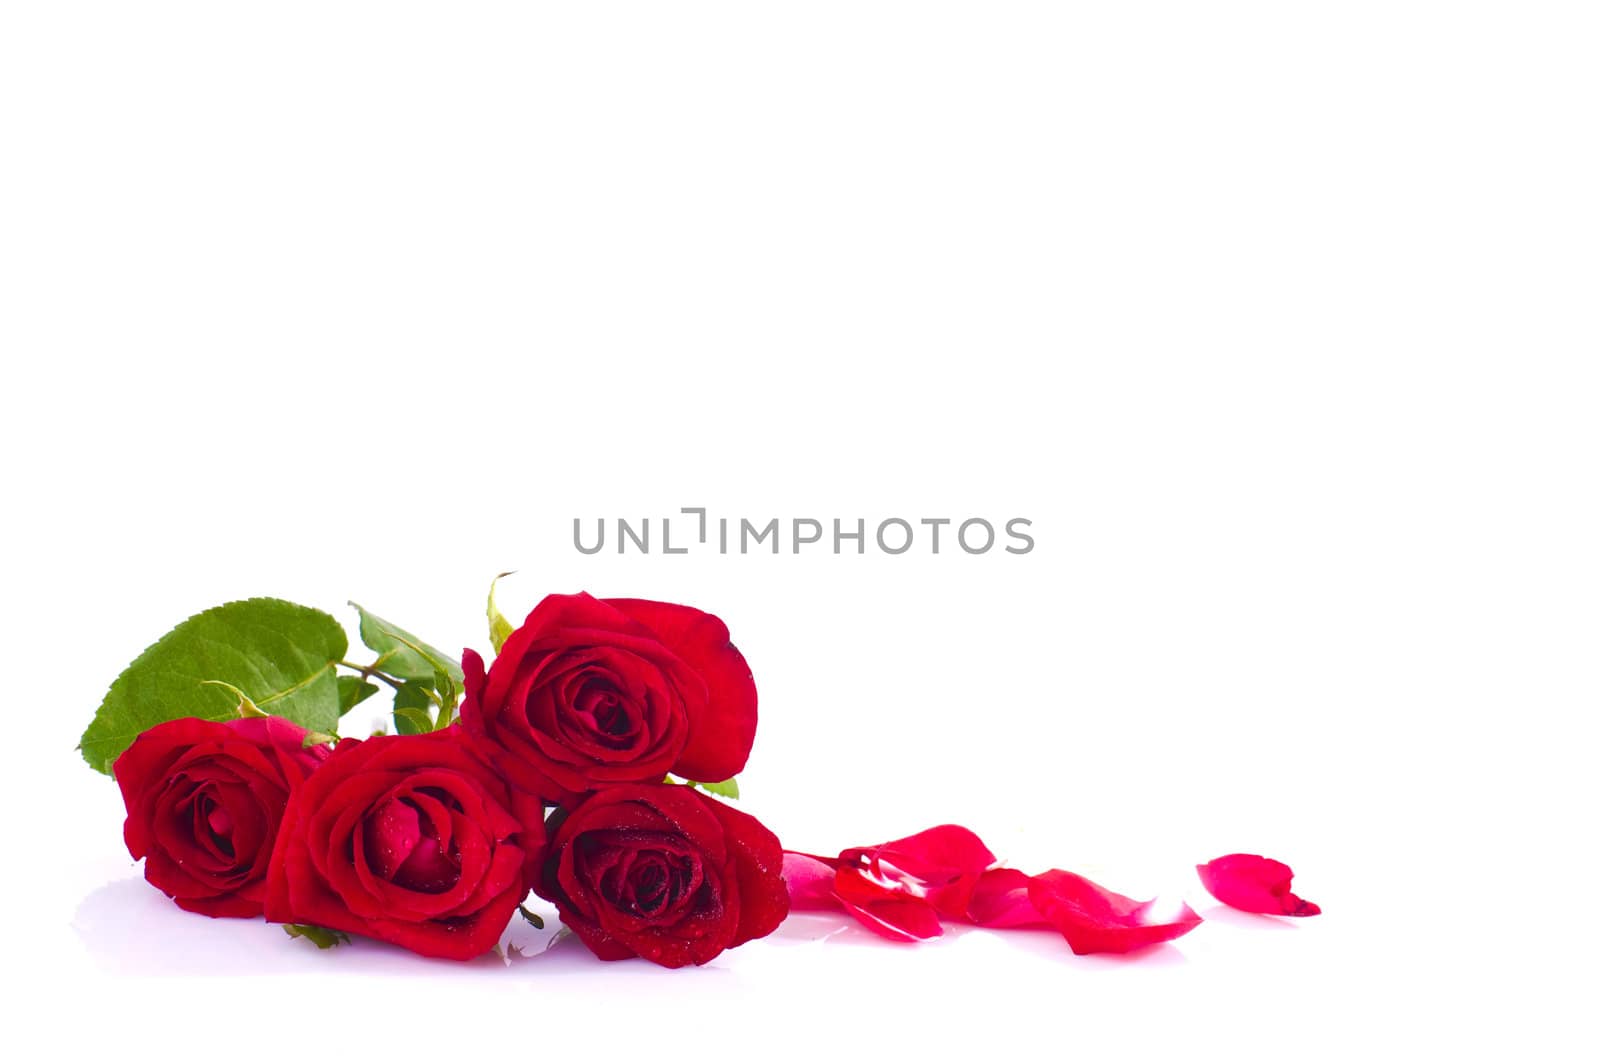 rose by yuliang11